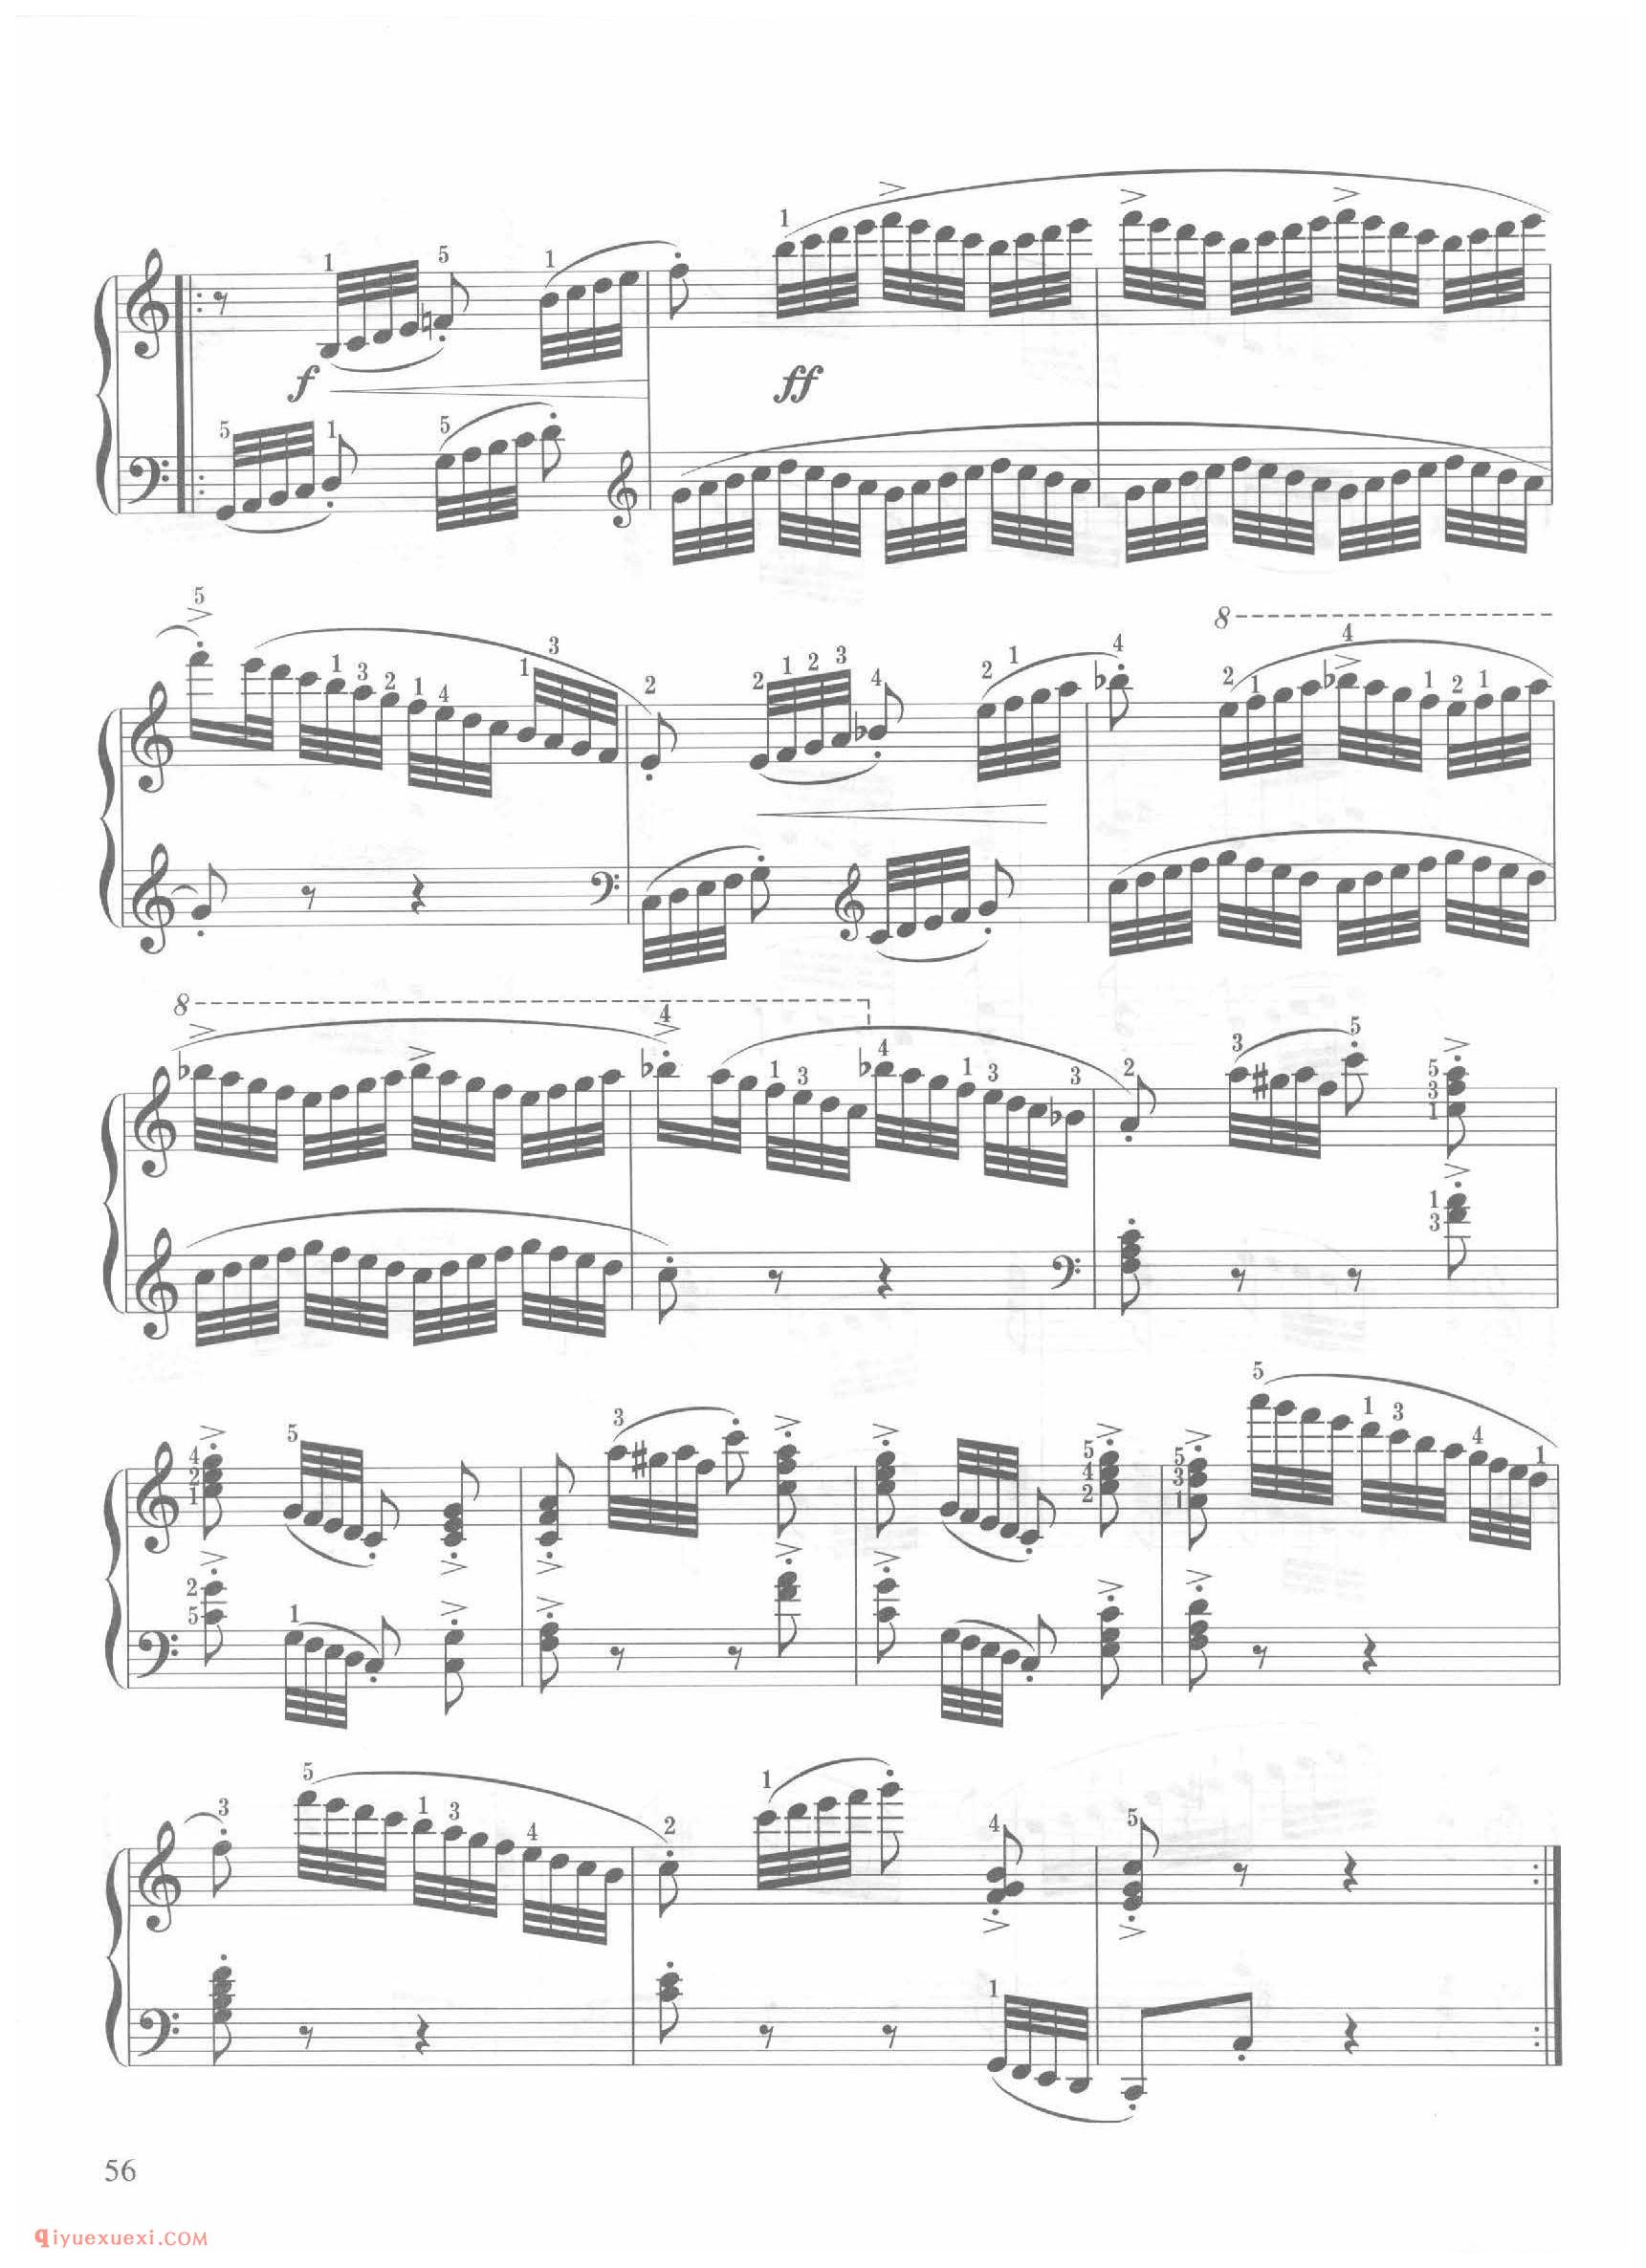 第16条C大调非常活跃而有力地(Molto vivace energi)车尔尼钢琴作品849_常桦讲解 注释